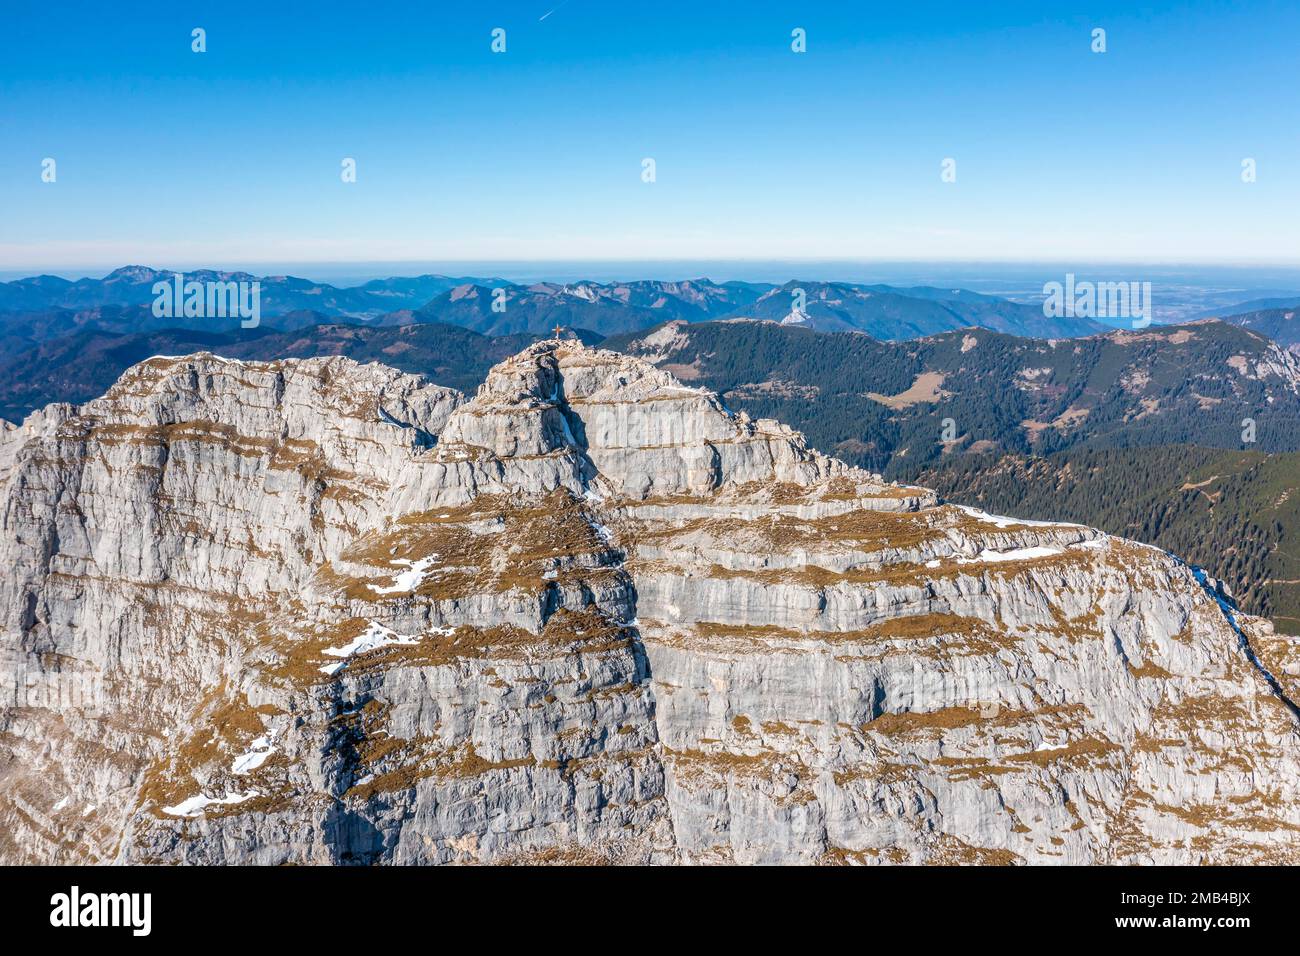 Luftaufnahme, Guffertspitze, Gipfel der Guffert, Brandenberger Alpen, nördliche Kalksteinalpen, östliche Alpen, Tirol, Österreich Stockfoto